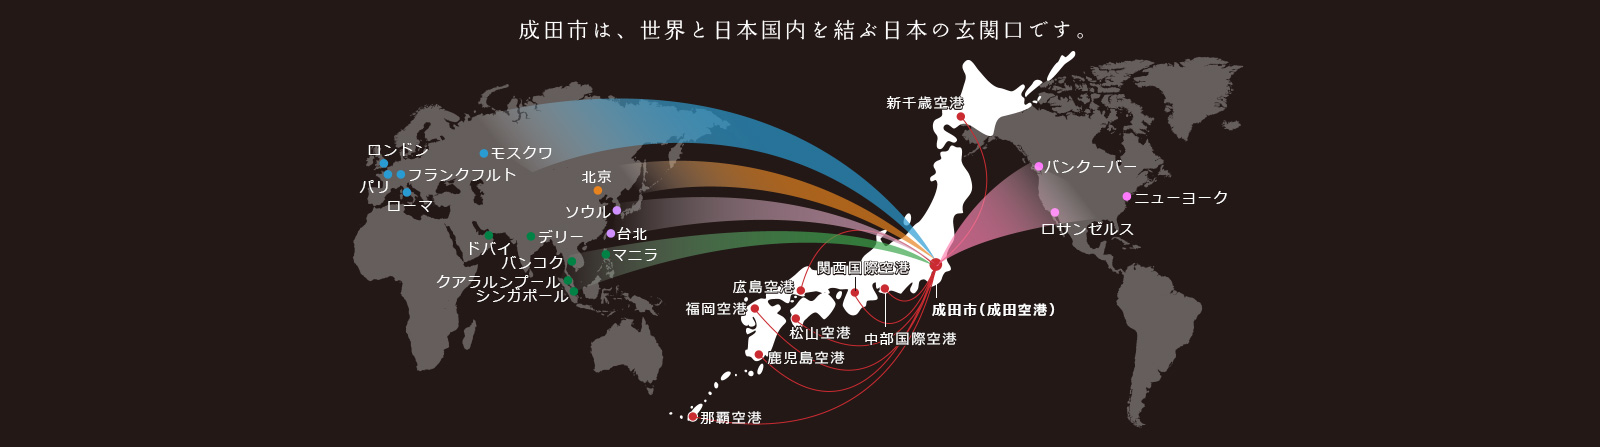 成田市は、世界と日本国内を結ぶ日本の玄関口です